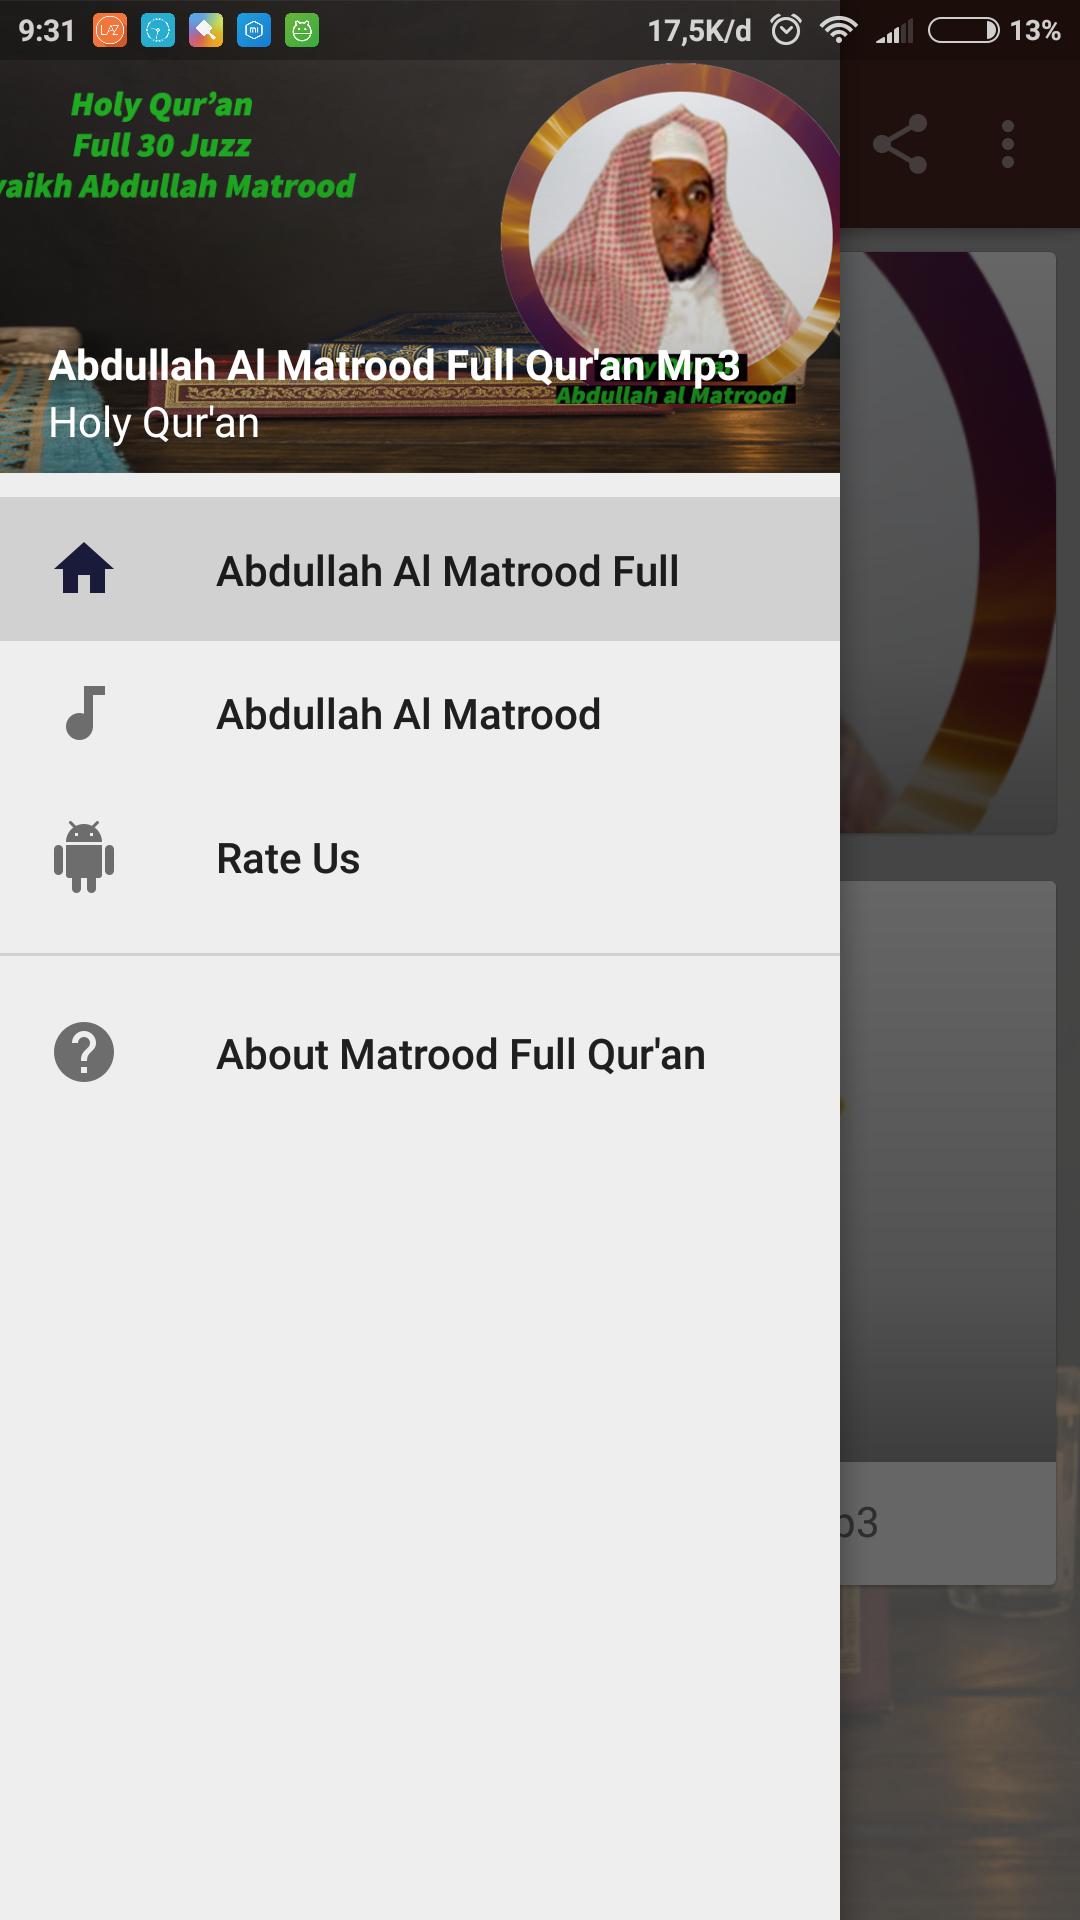 Abdullah Al Matrood - Full Quran Mp3 APK for Android Download